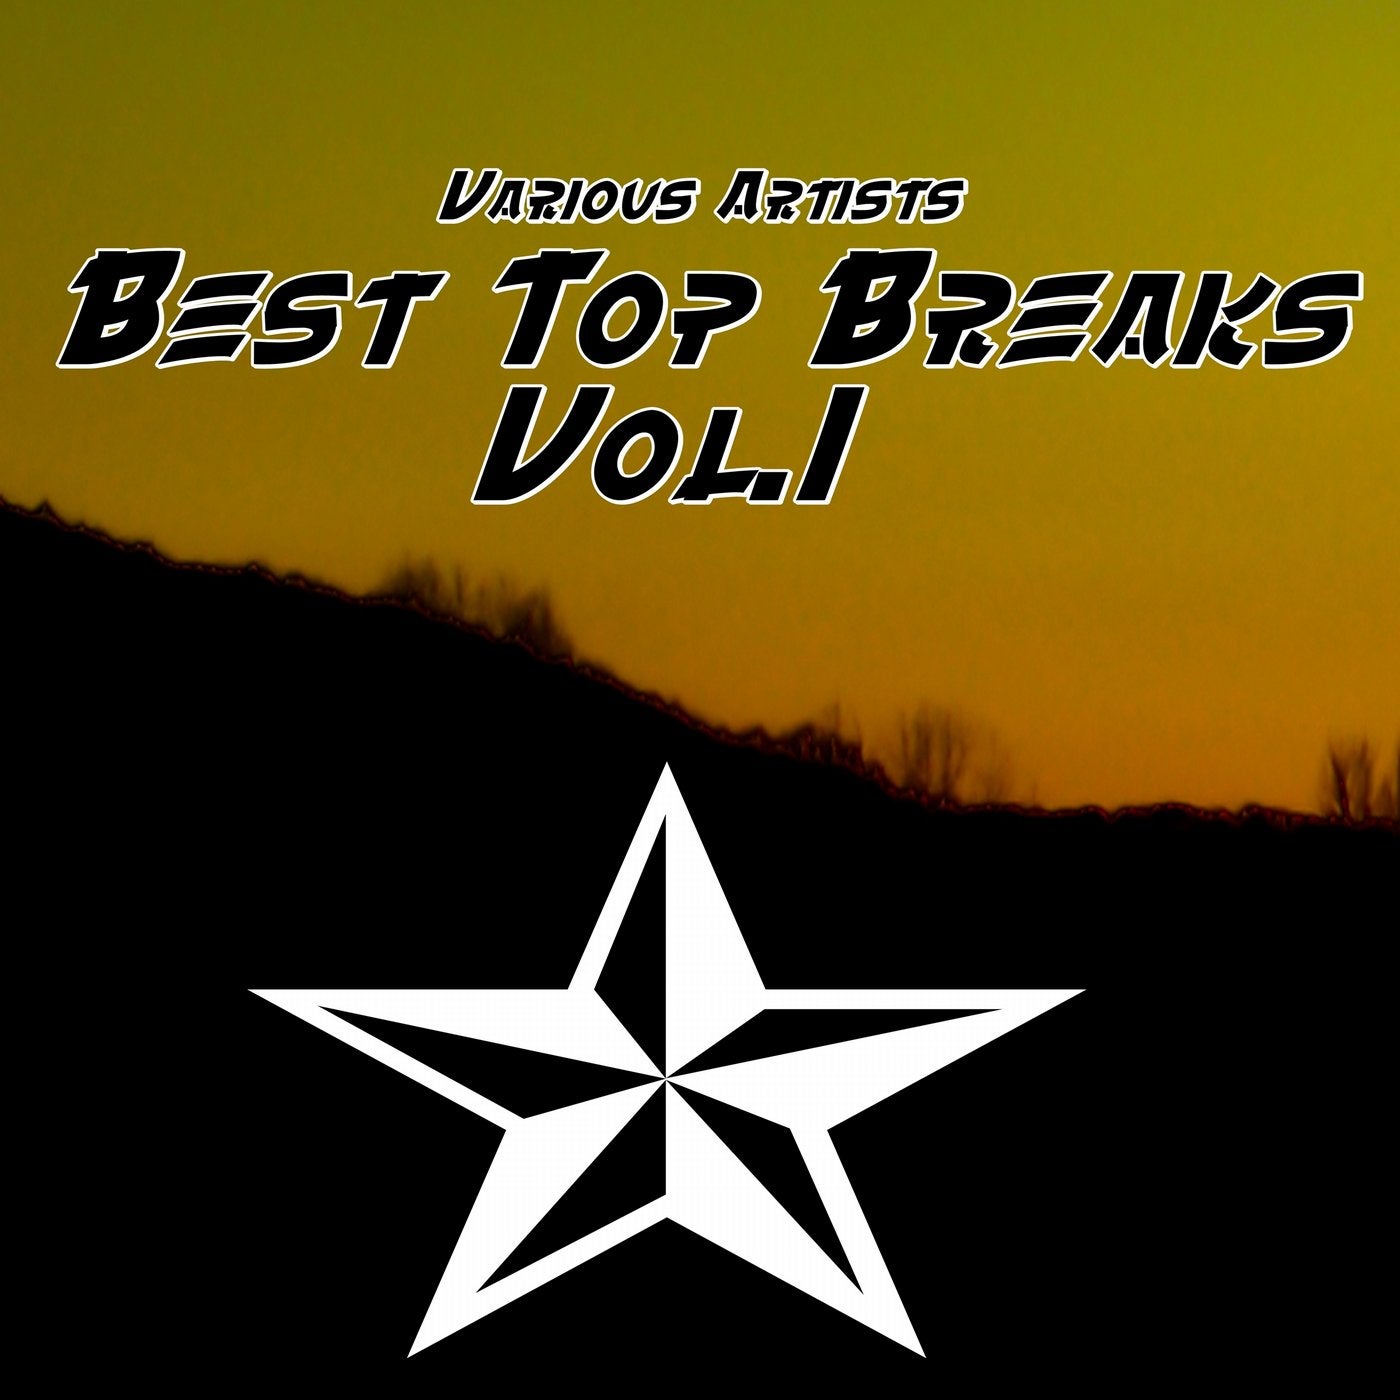 Best Top Breaks, Vol. 1